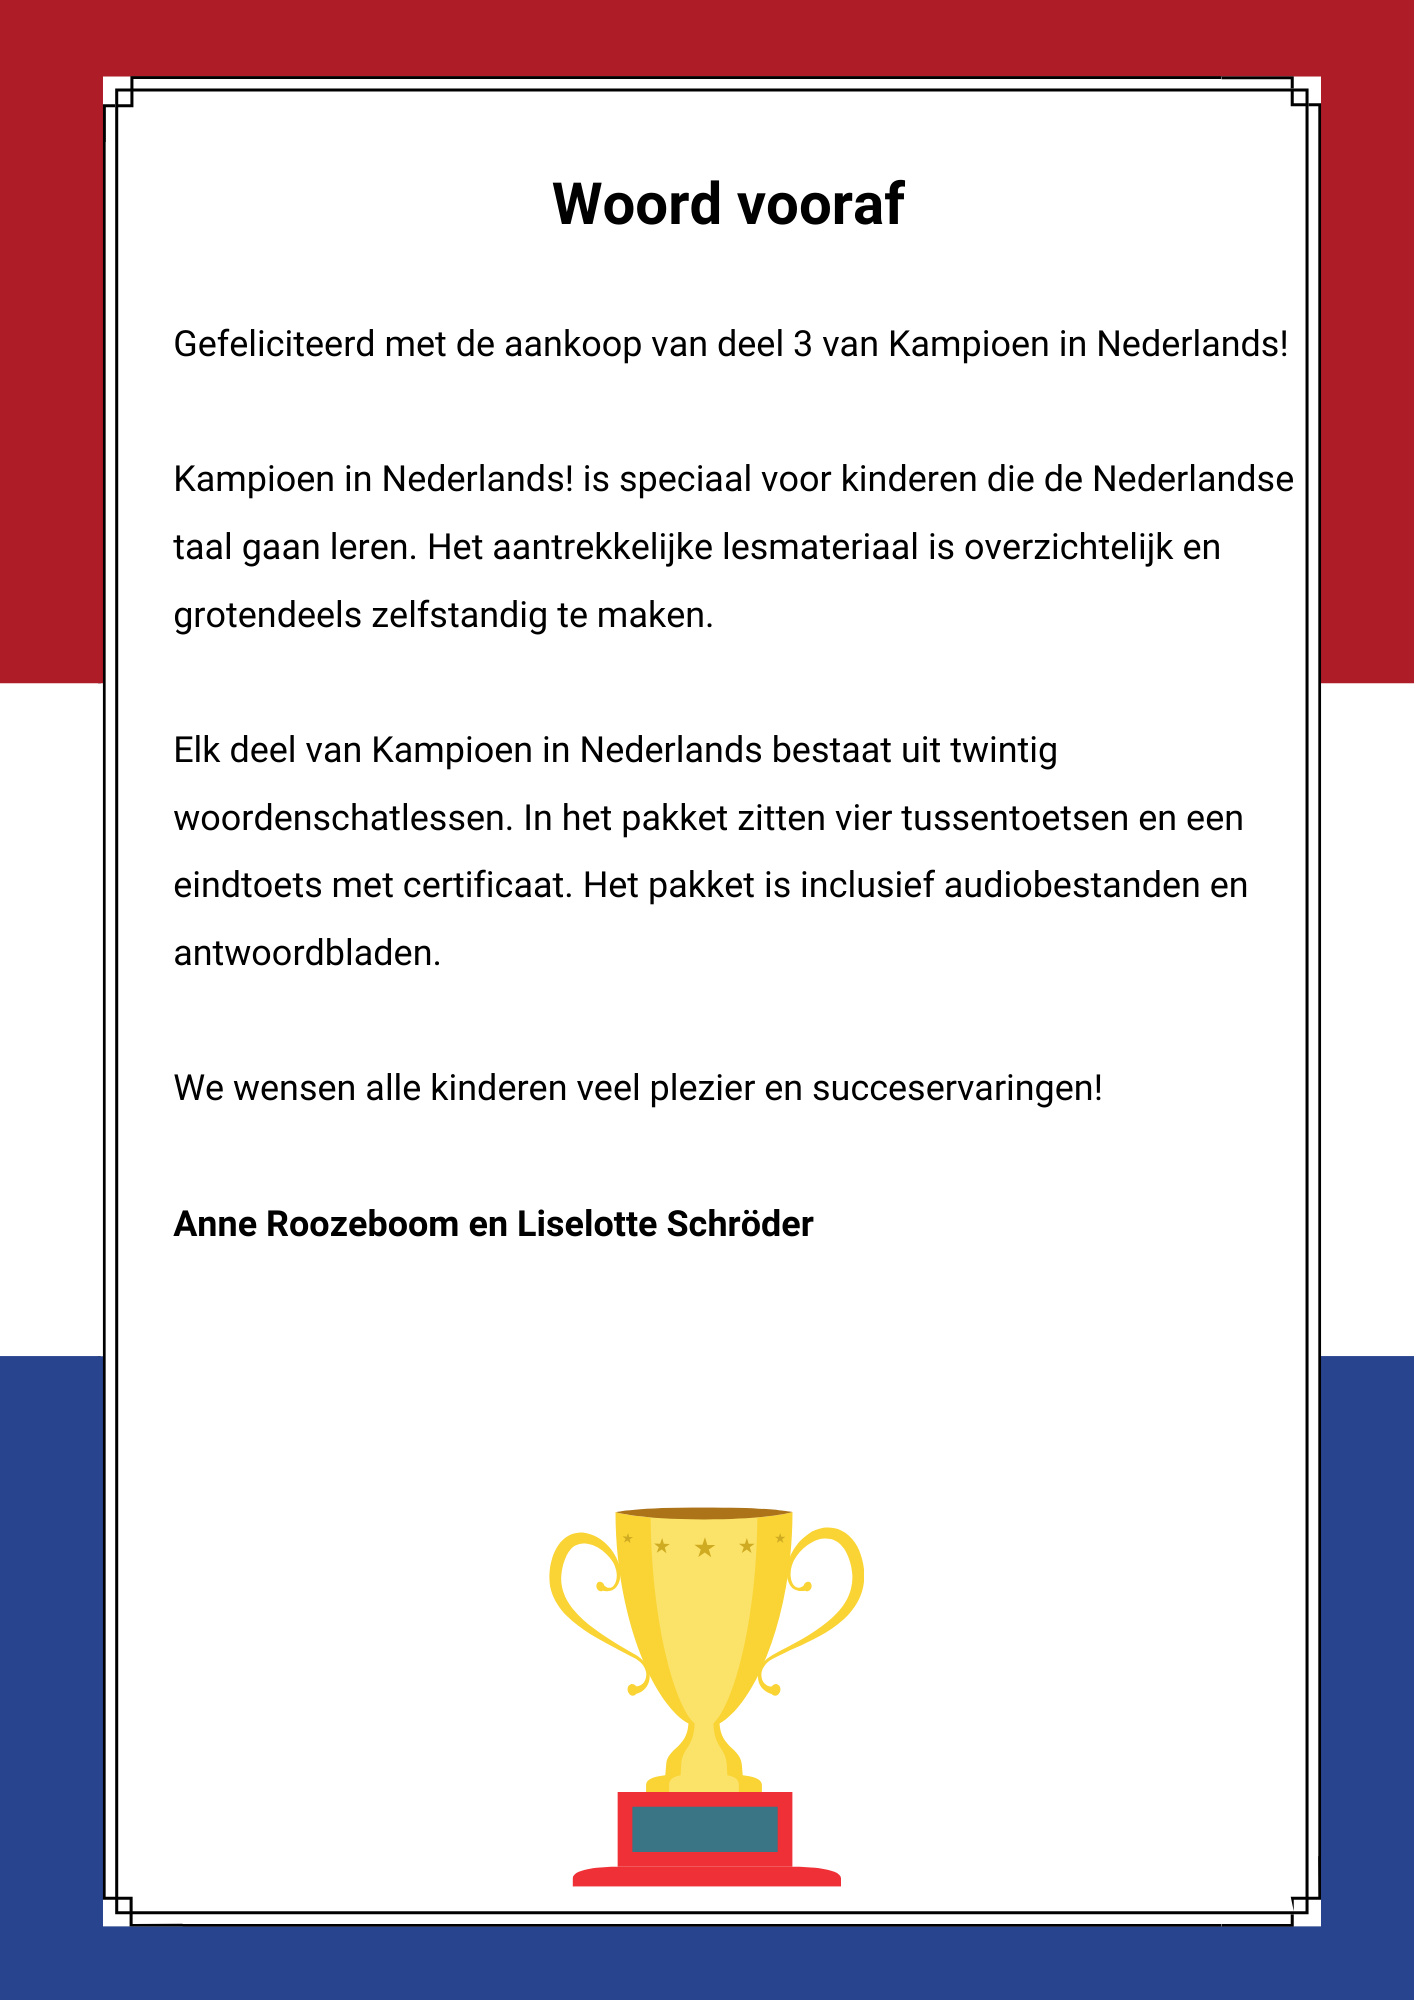 Kampioen in Nederlands! - NT2 - Deel 3